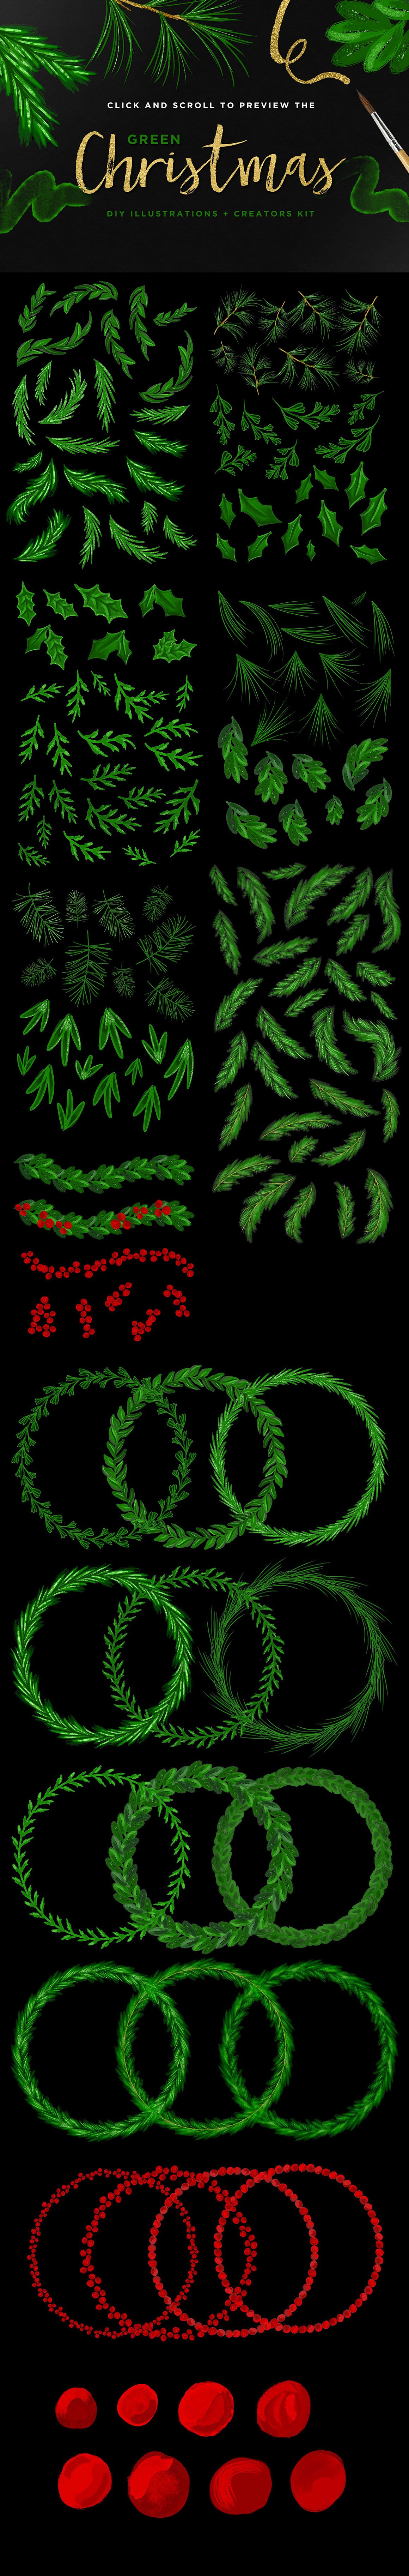 手绘水彩绿色植物装饰素材 Green-Christmas-D